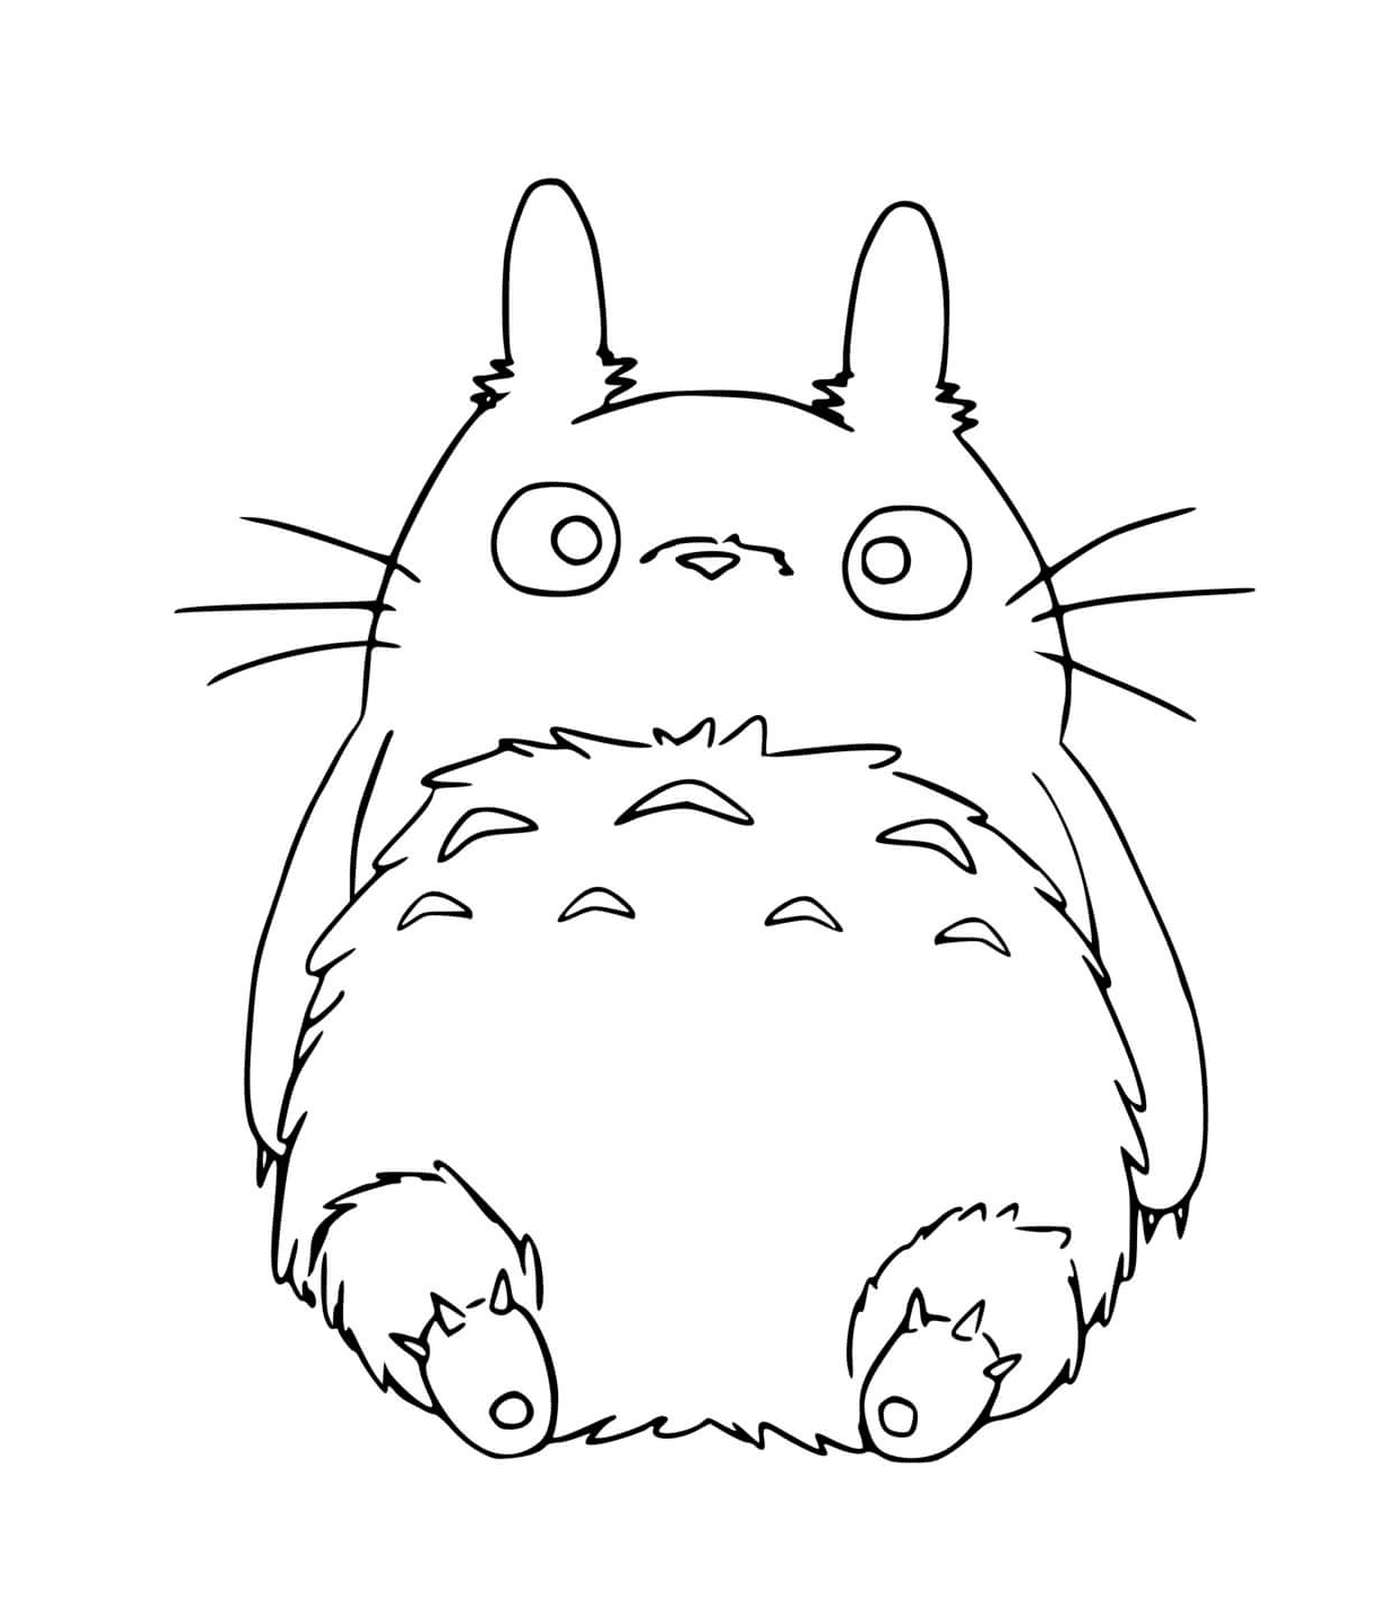  Totoro seduto sul pavimento 